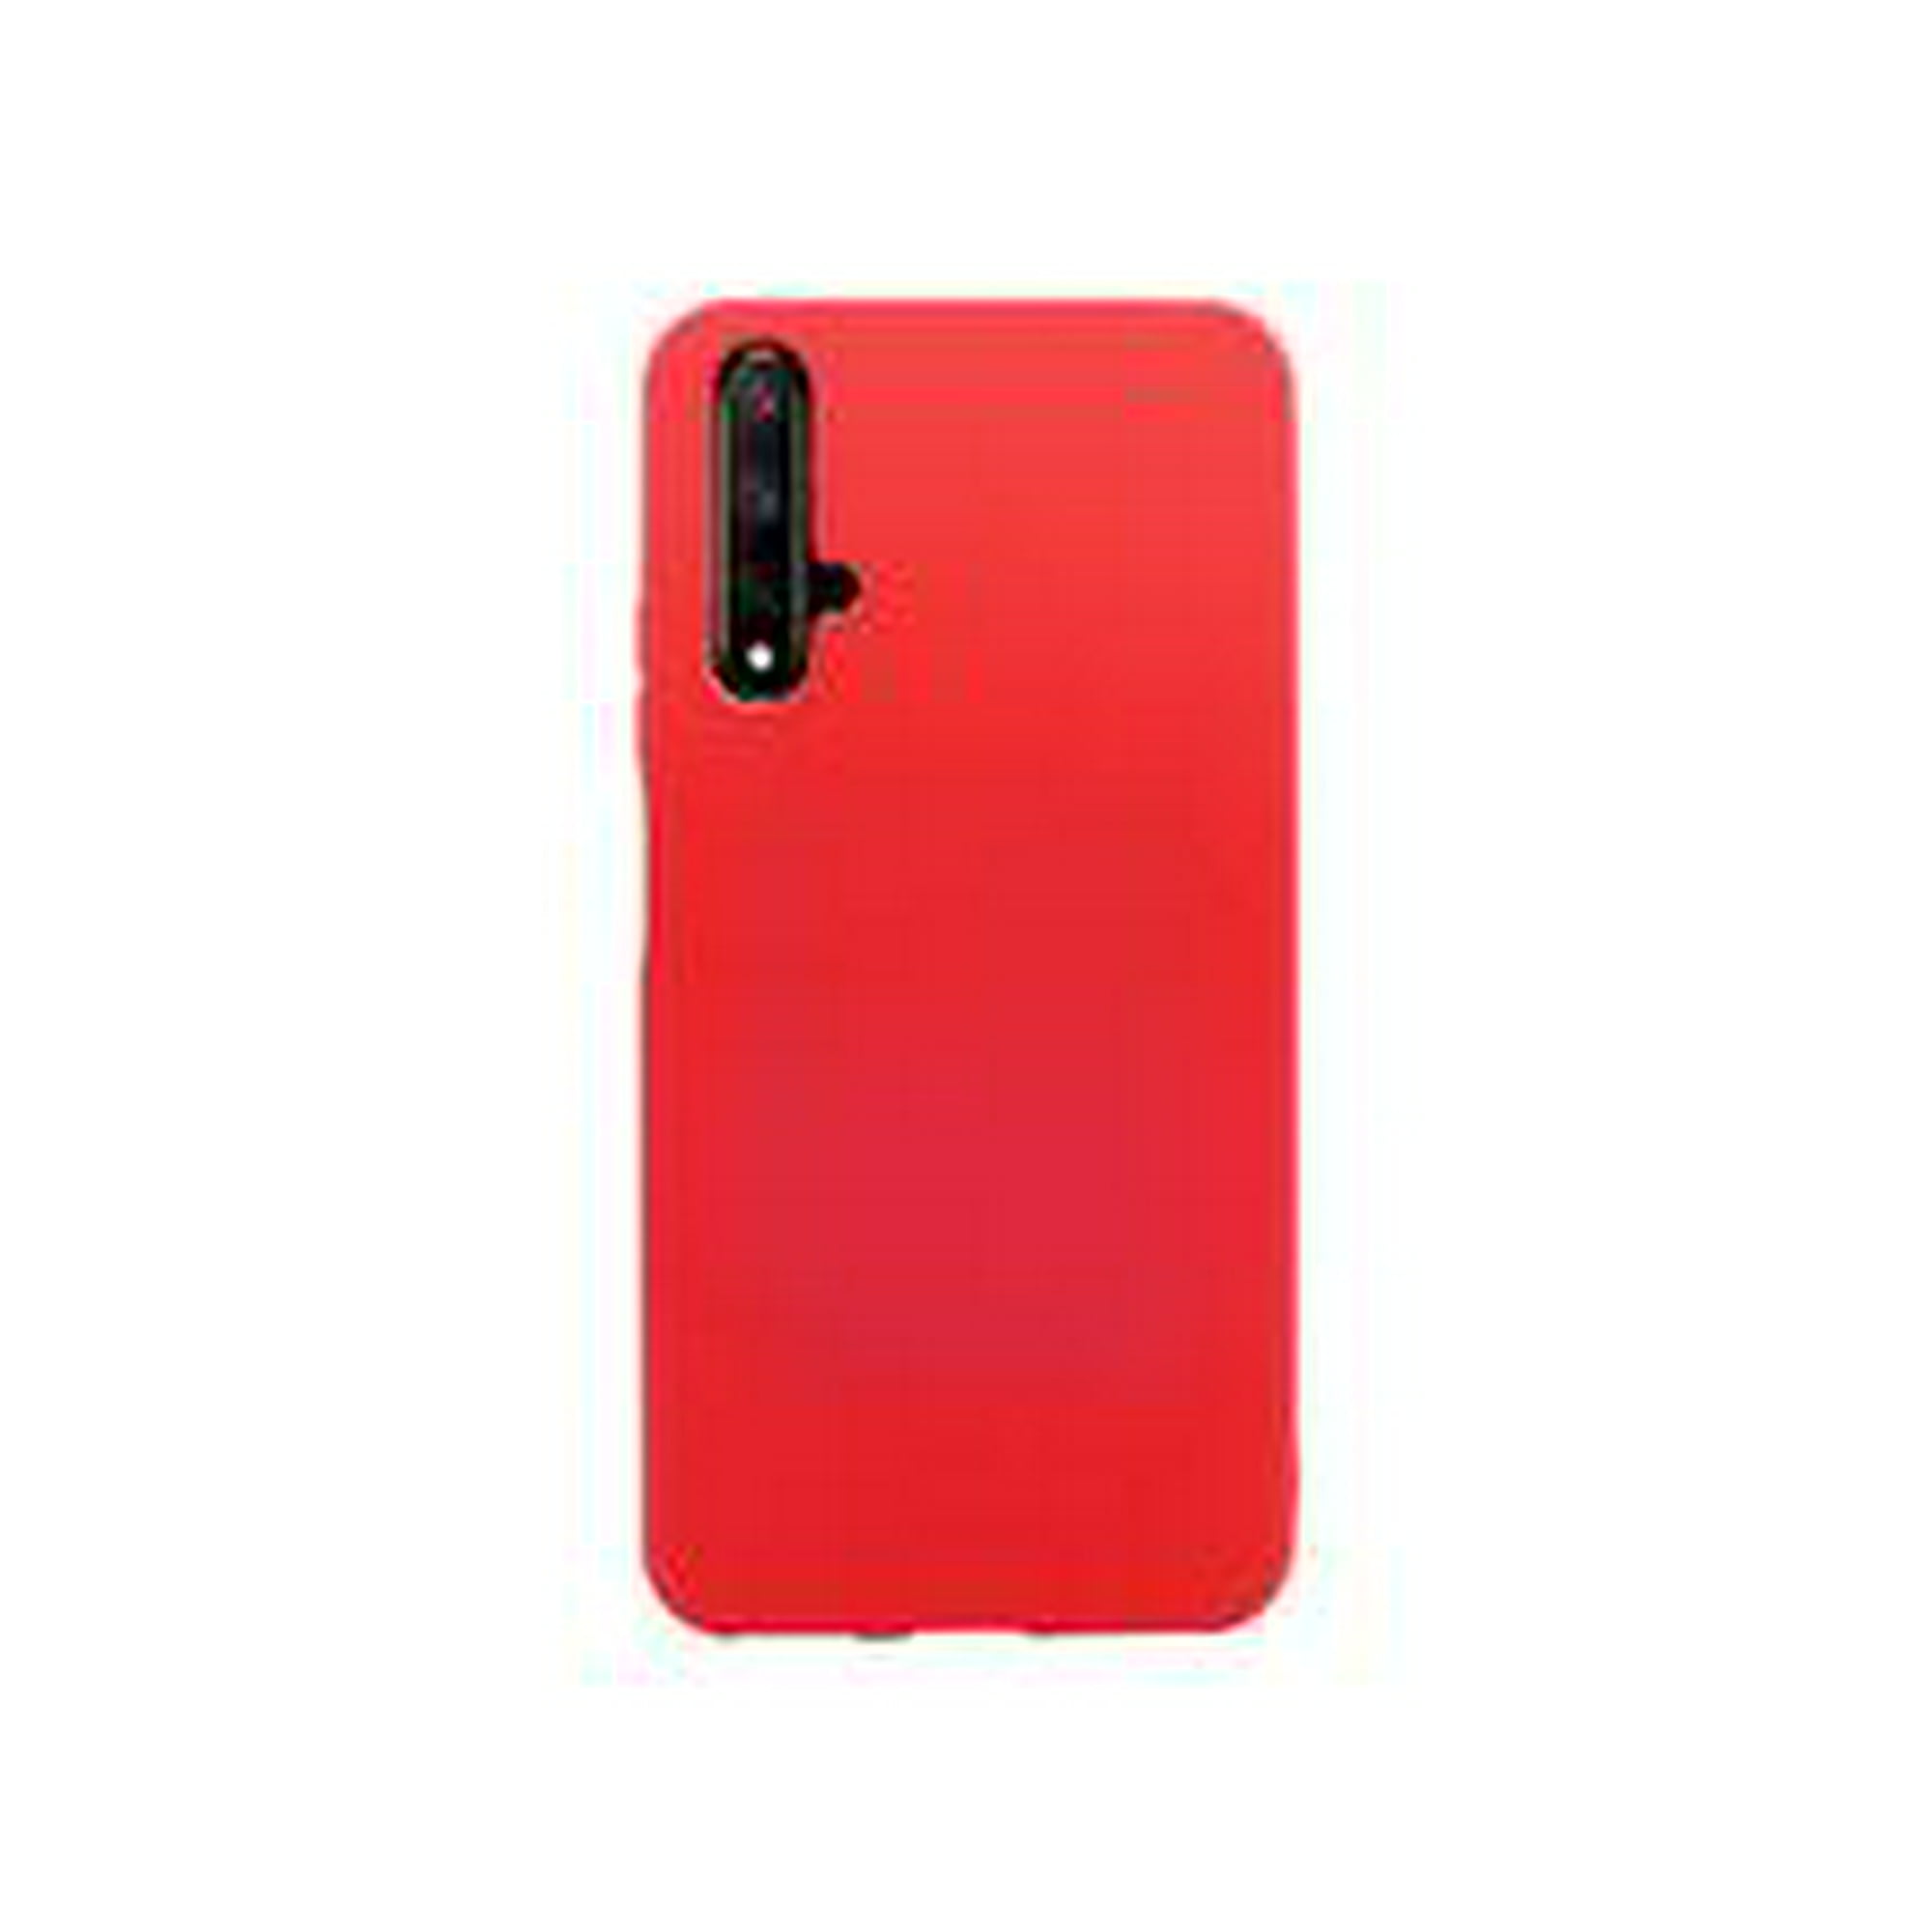 Funda Molan Cano Case De Silicon Suave Para Huawei Nova 5t Rojo Molan Cano  Funda de Silicon Suave Acabado Mate